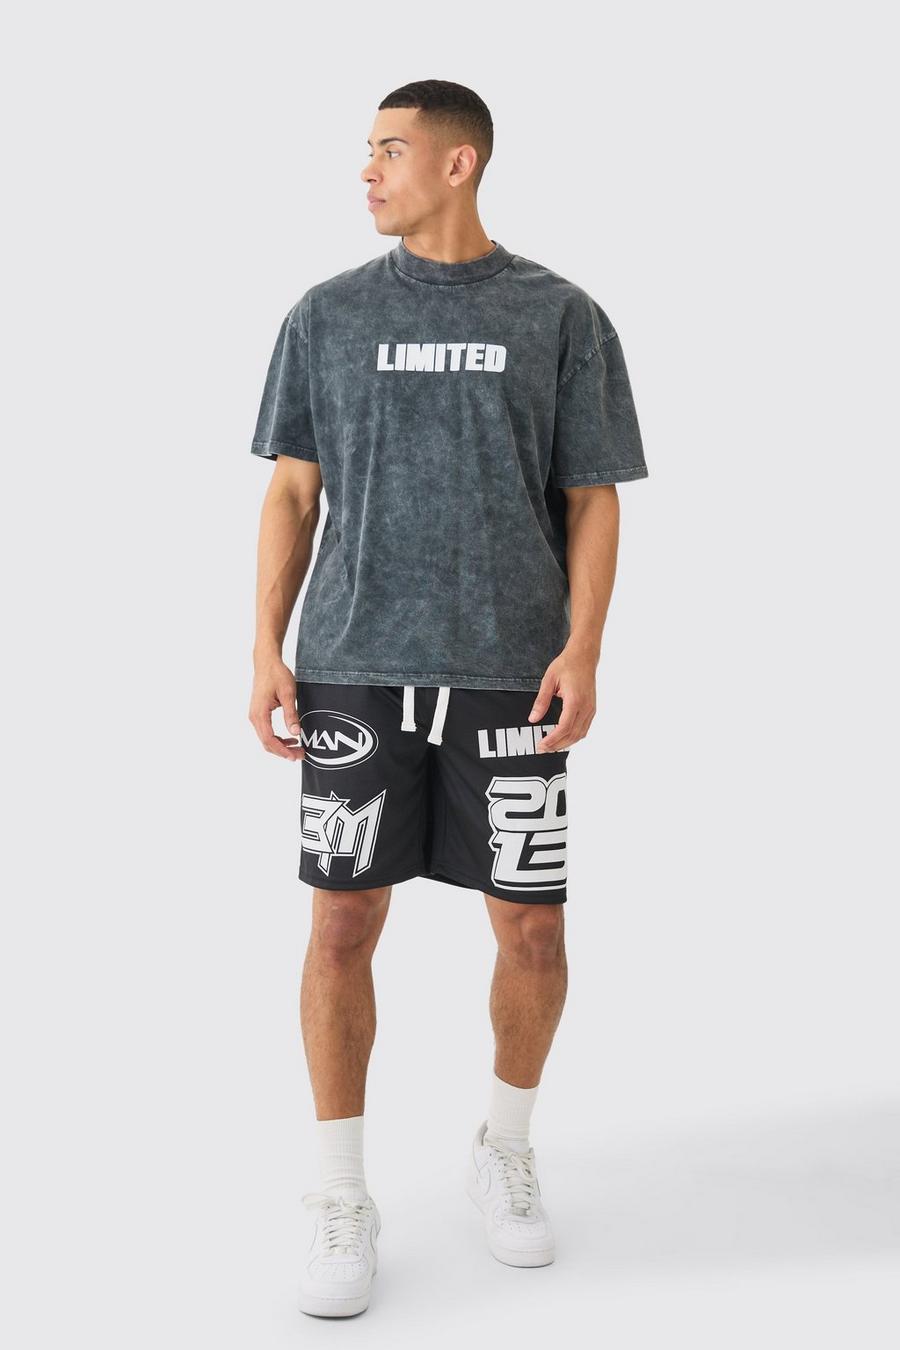 Black Oversized Acid Wash Limited T-shirt & Mesh Basketball Shorts